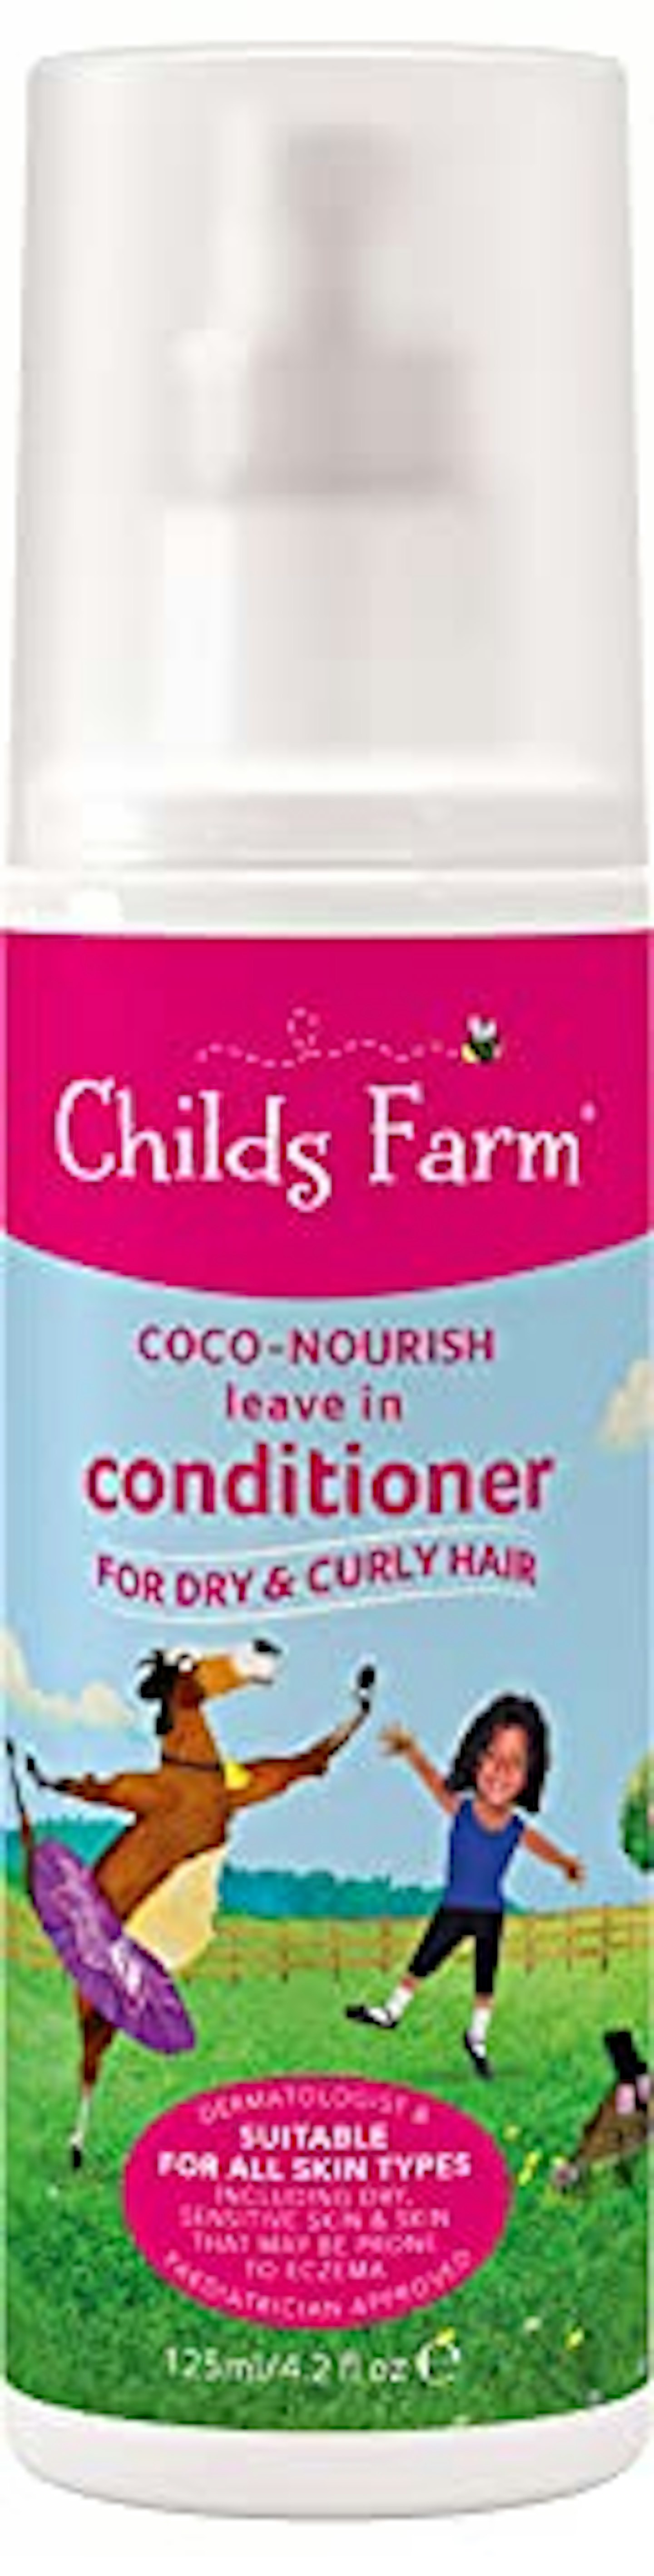 Childs Farm Coco-Nourish Leave in Conditioner